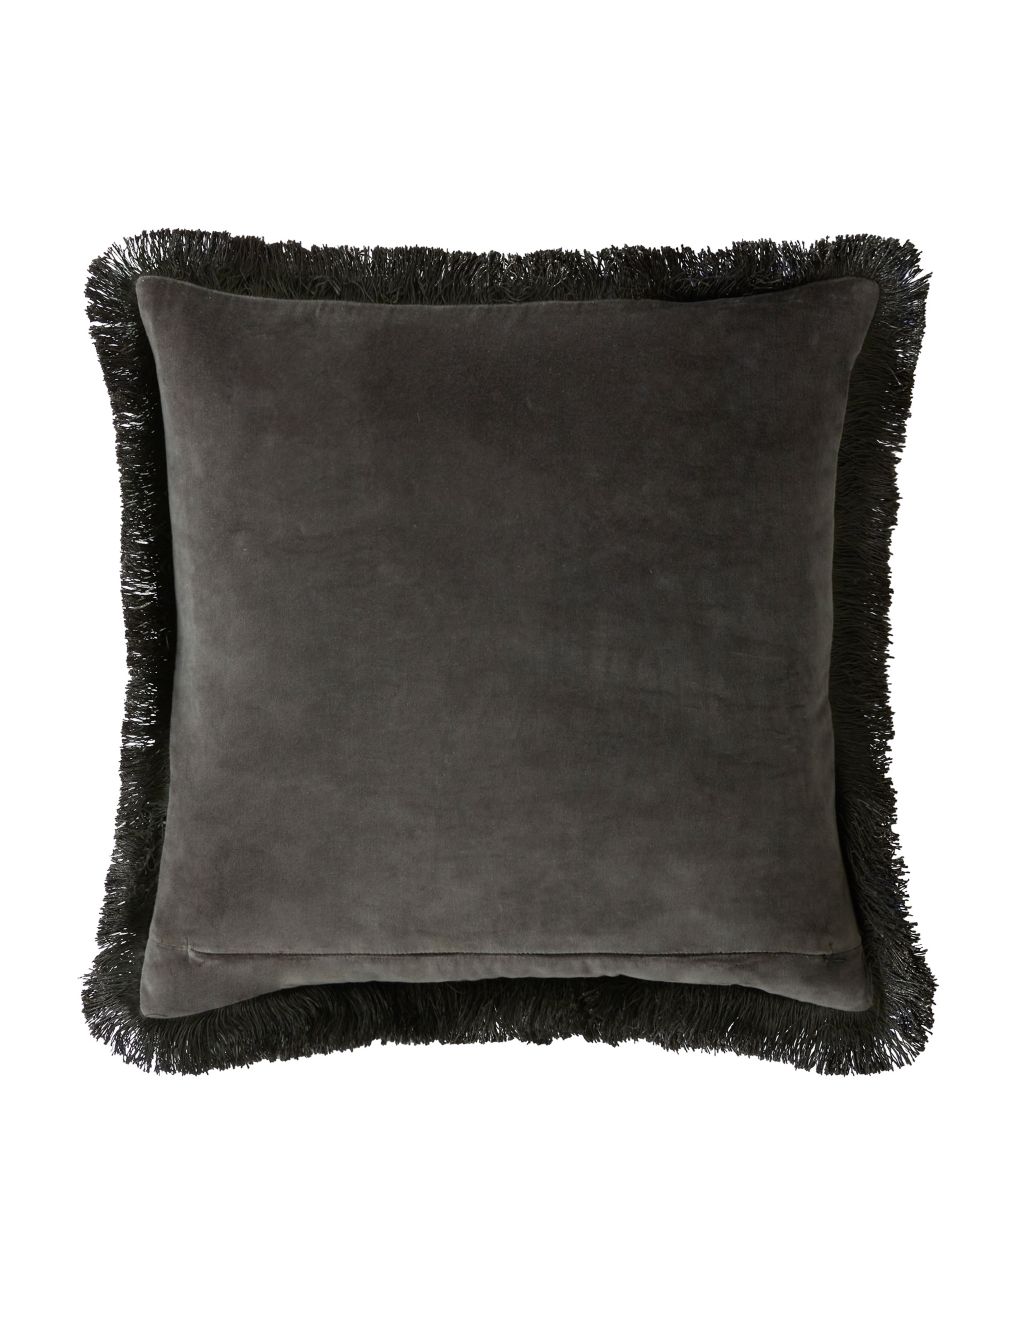 Pimpernel Velvet Cushion 2 of 3